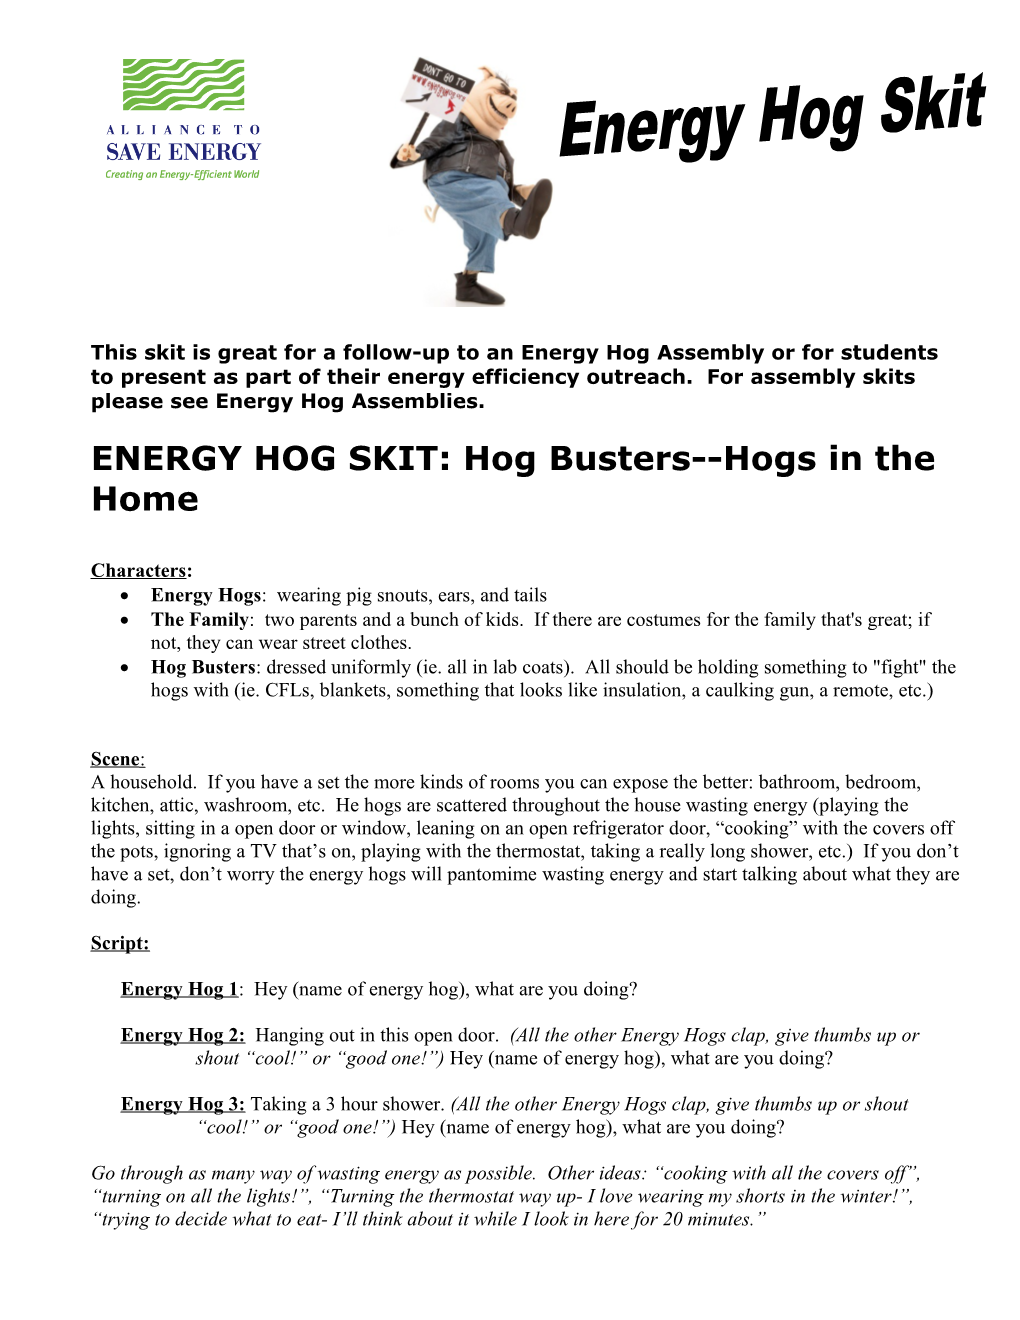 ENERGY HOG SKIT: Hog Busters Hogs in the Home